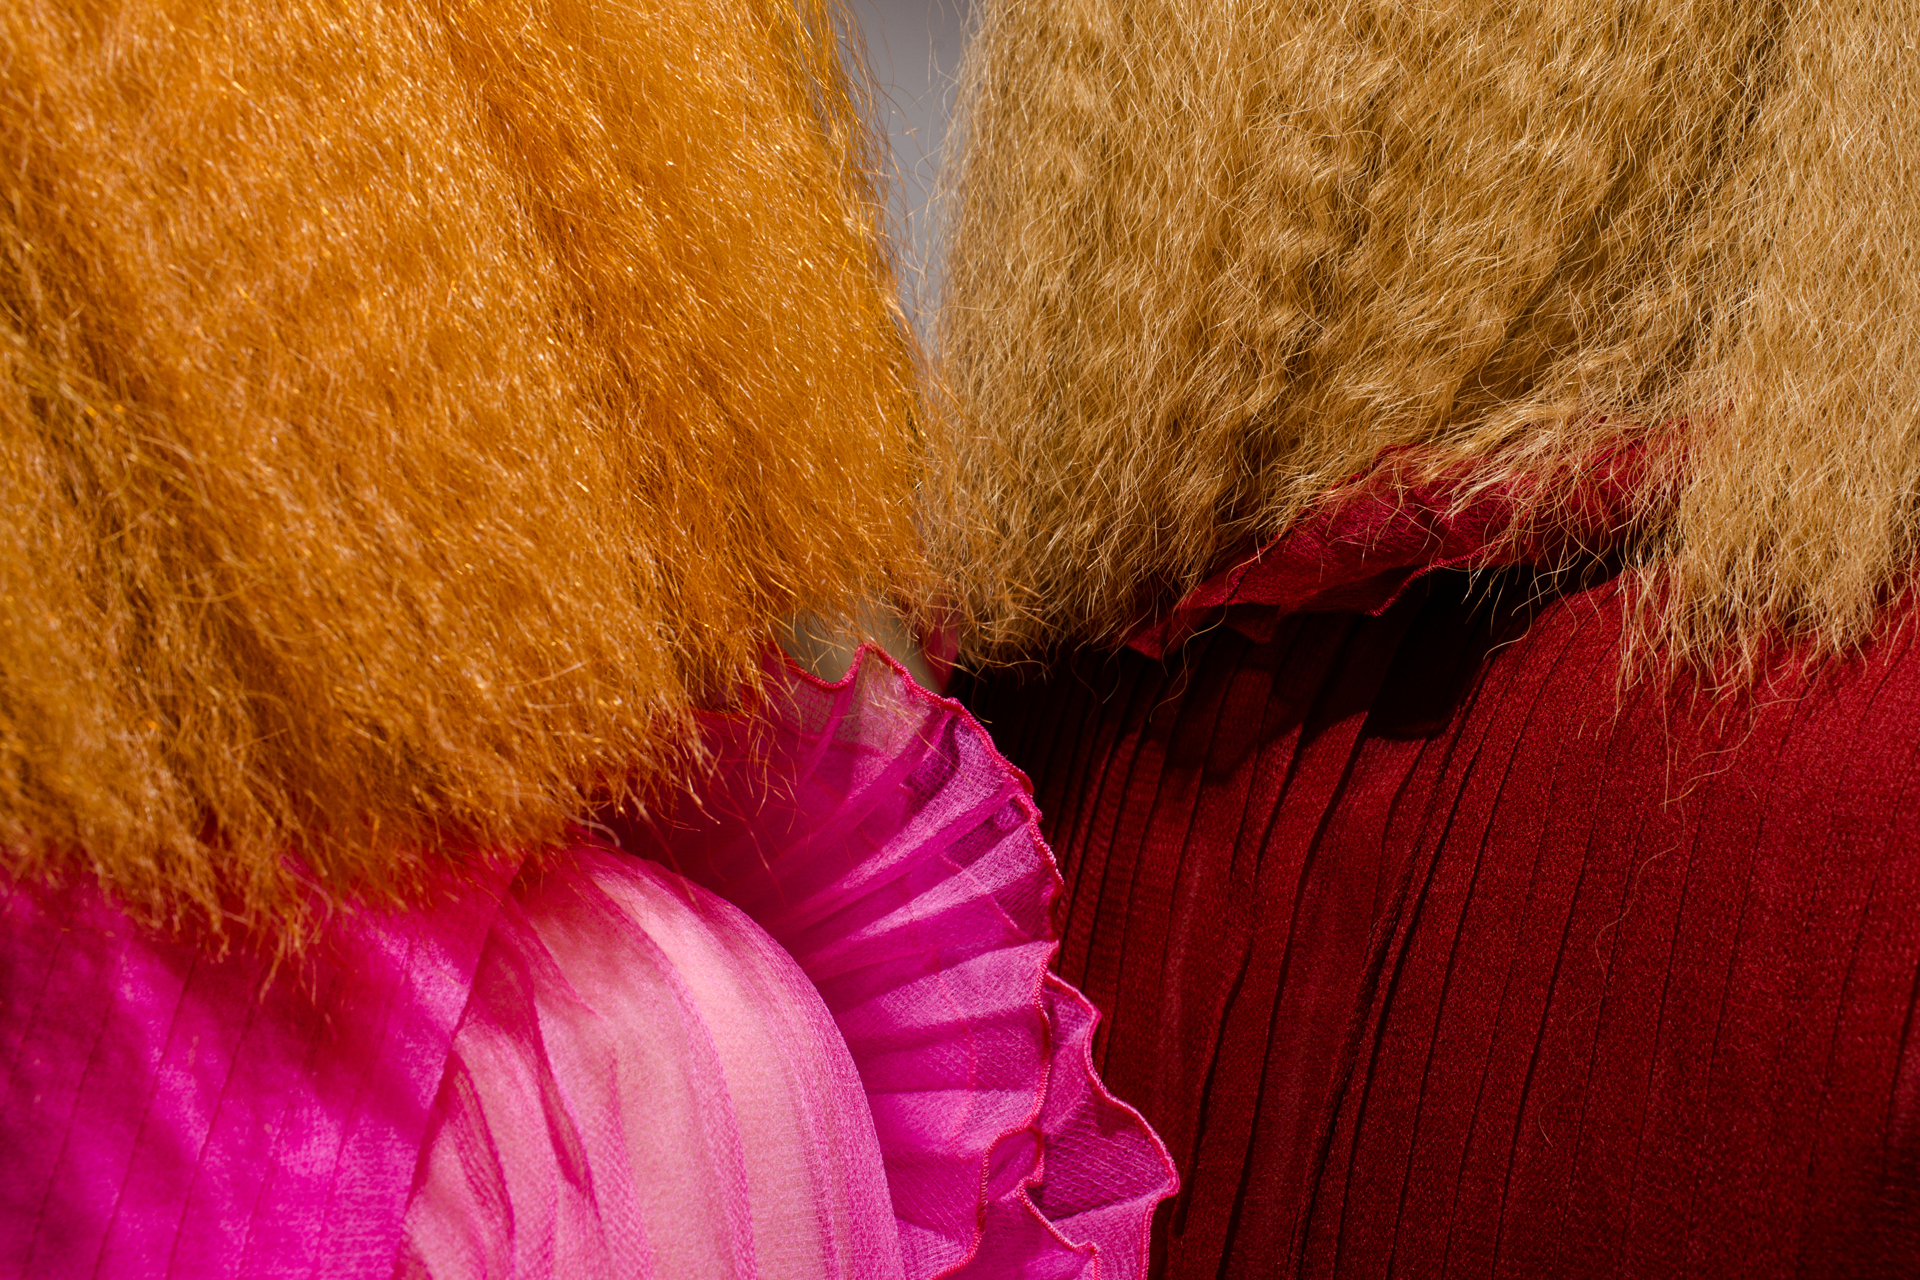 Schiaparelli (Redheads) by Landon Nordeman